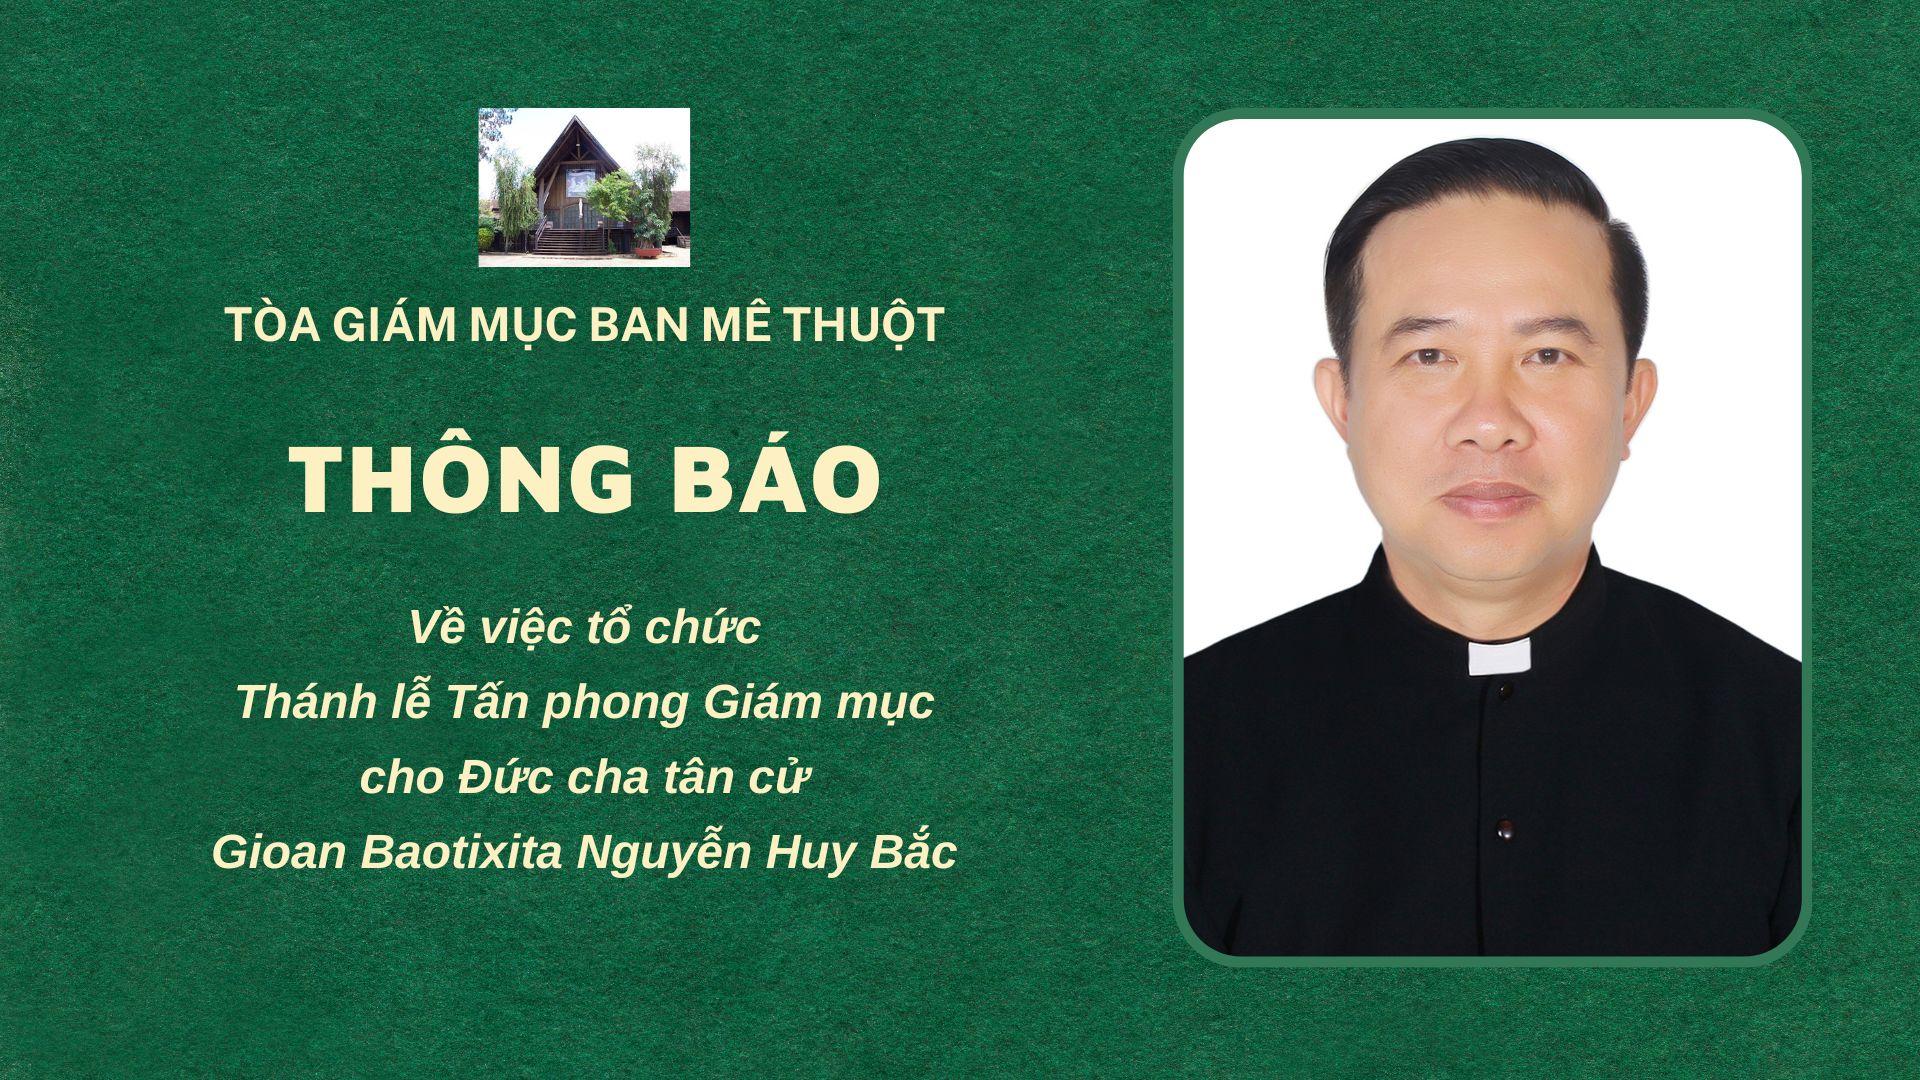 Thông báo của Tòa Giám mục Ban Mê Thuột về việc tổ chức Thánh lễ Tấn phong Giám mục cho Đức cha tân cử Gioan Baotixita Nguyễn Huy Bắc